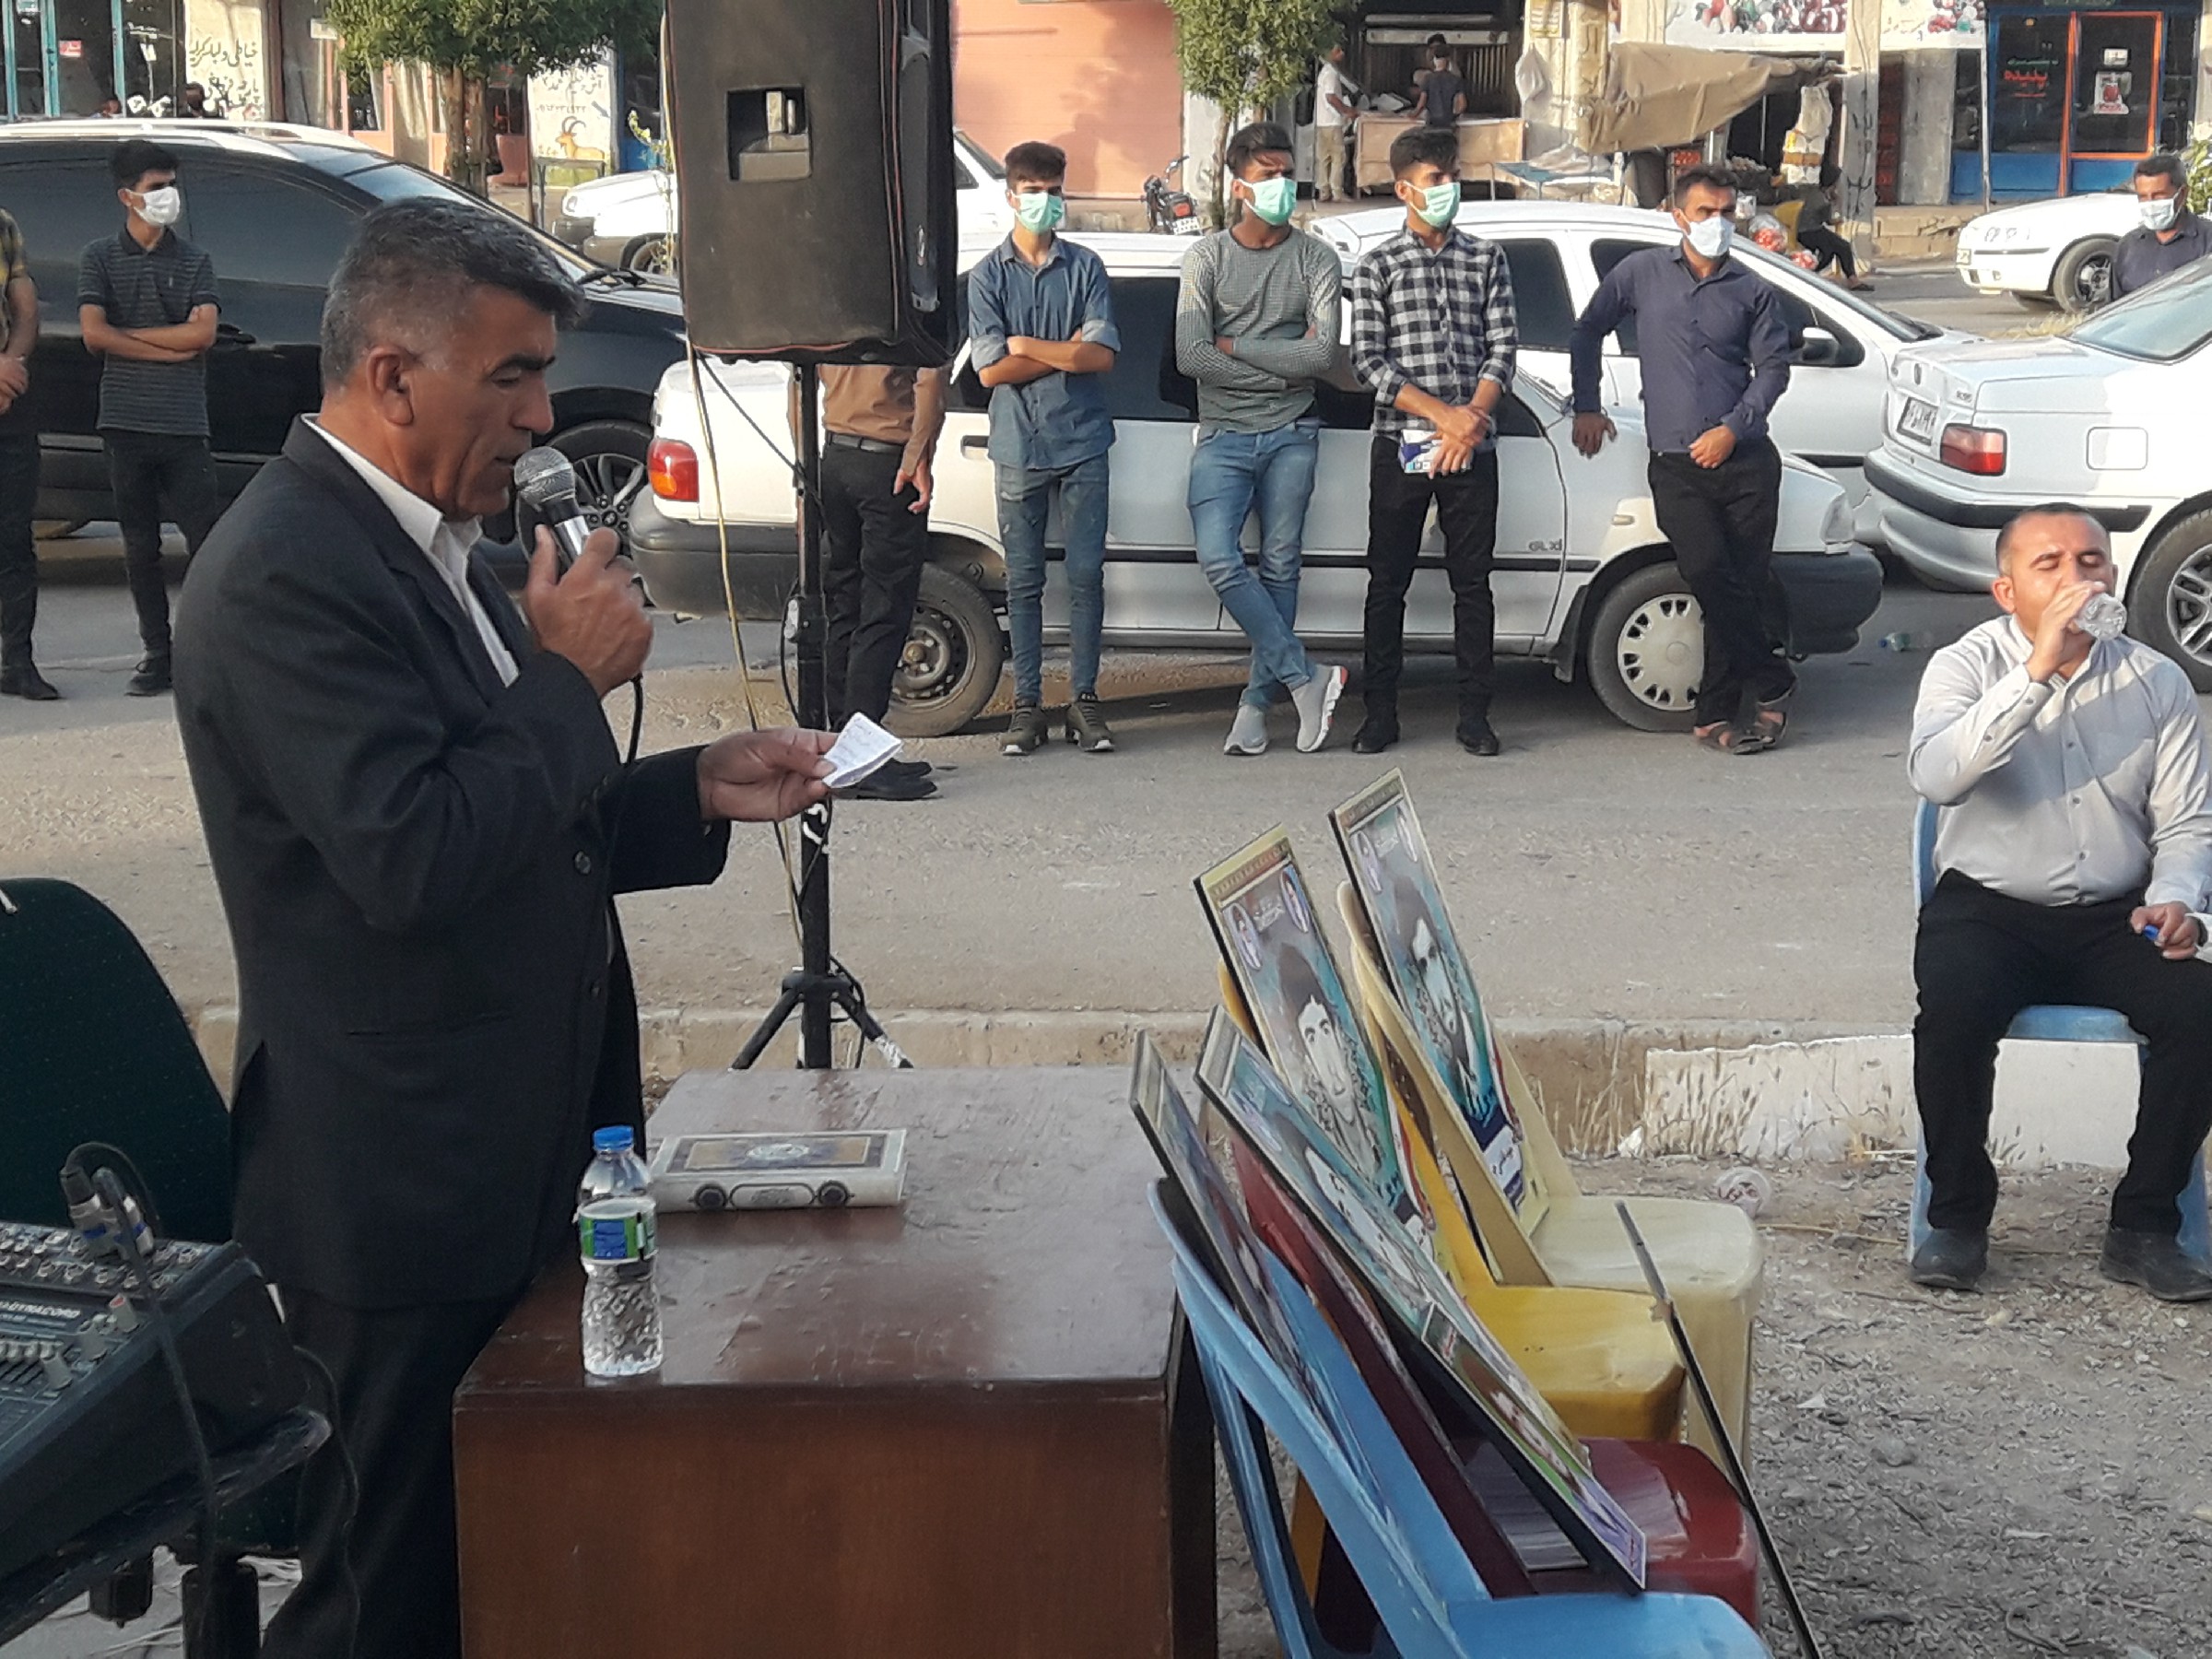 افتتاحیه و تجمیع ستادهای مردمی آیت الله رئیسی در شهرستان بهمئی + عکس